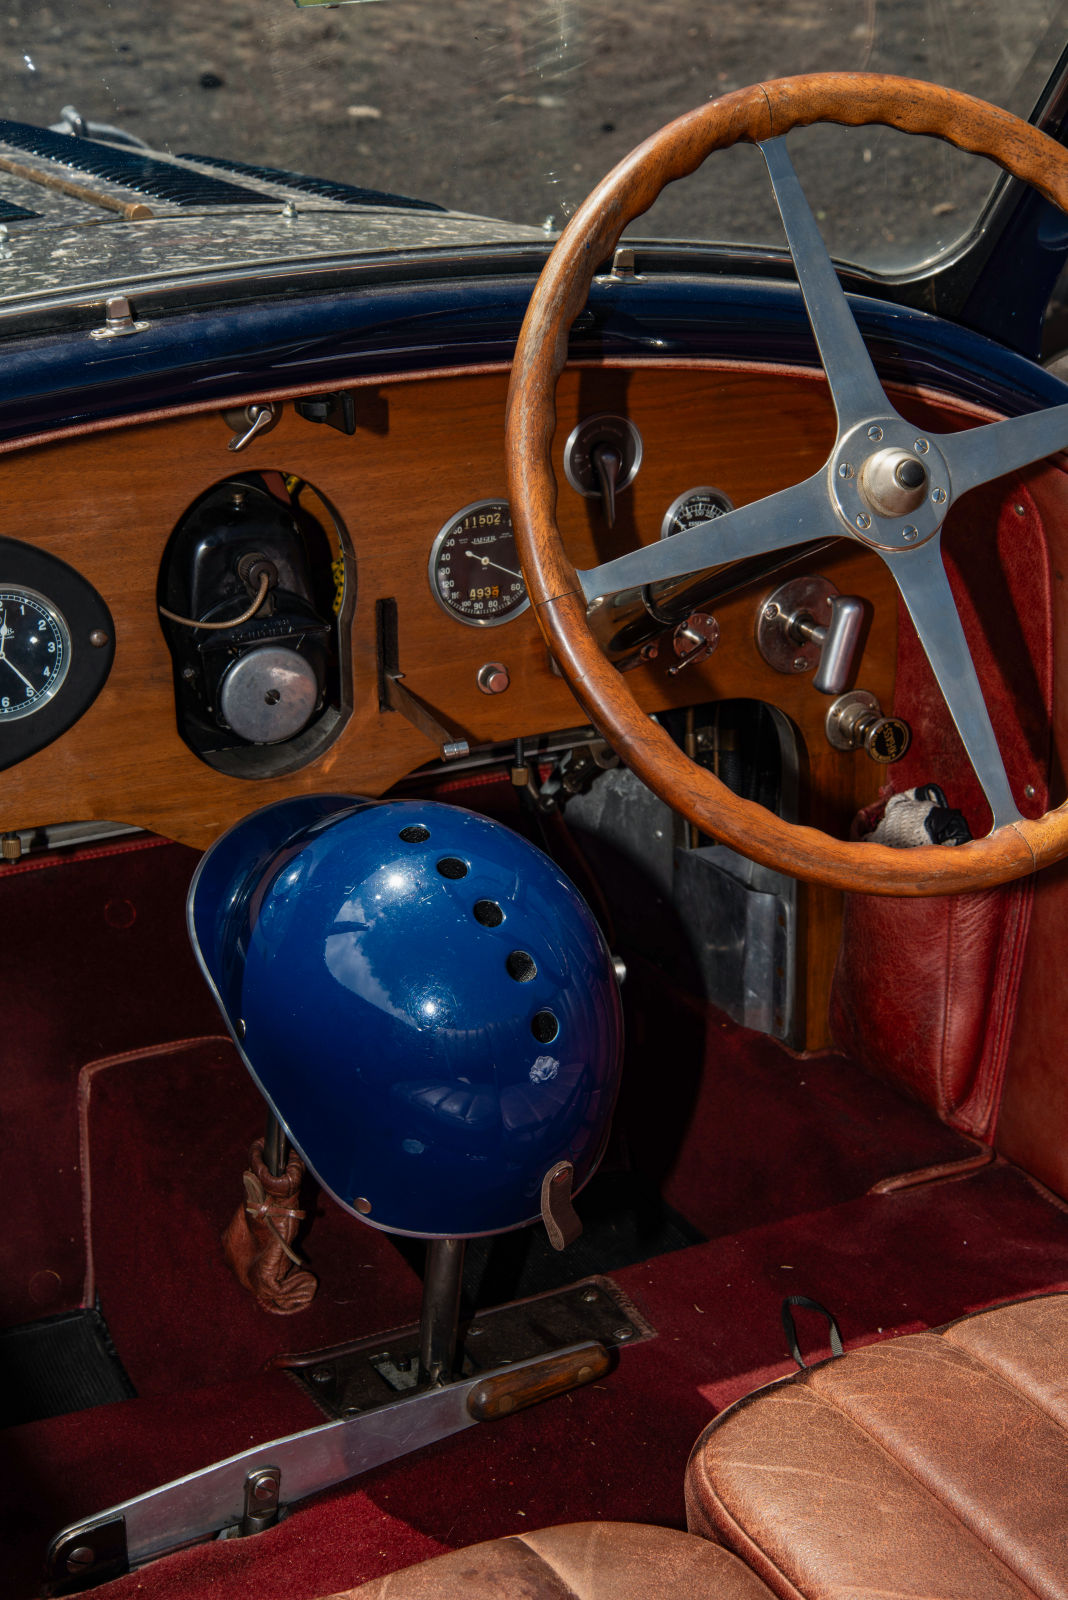 Dàn Bugatti cổ đắt giá tham gia hành trình hơn 1.000 km tại Sicily